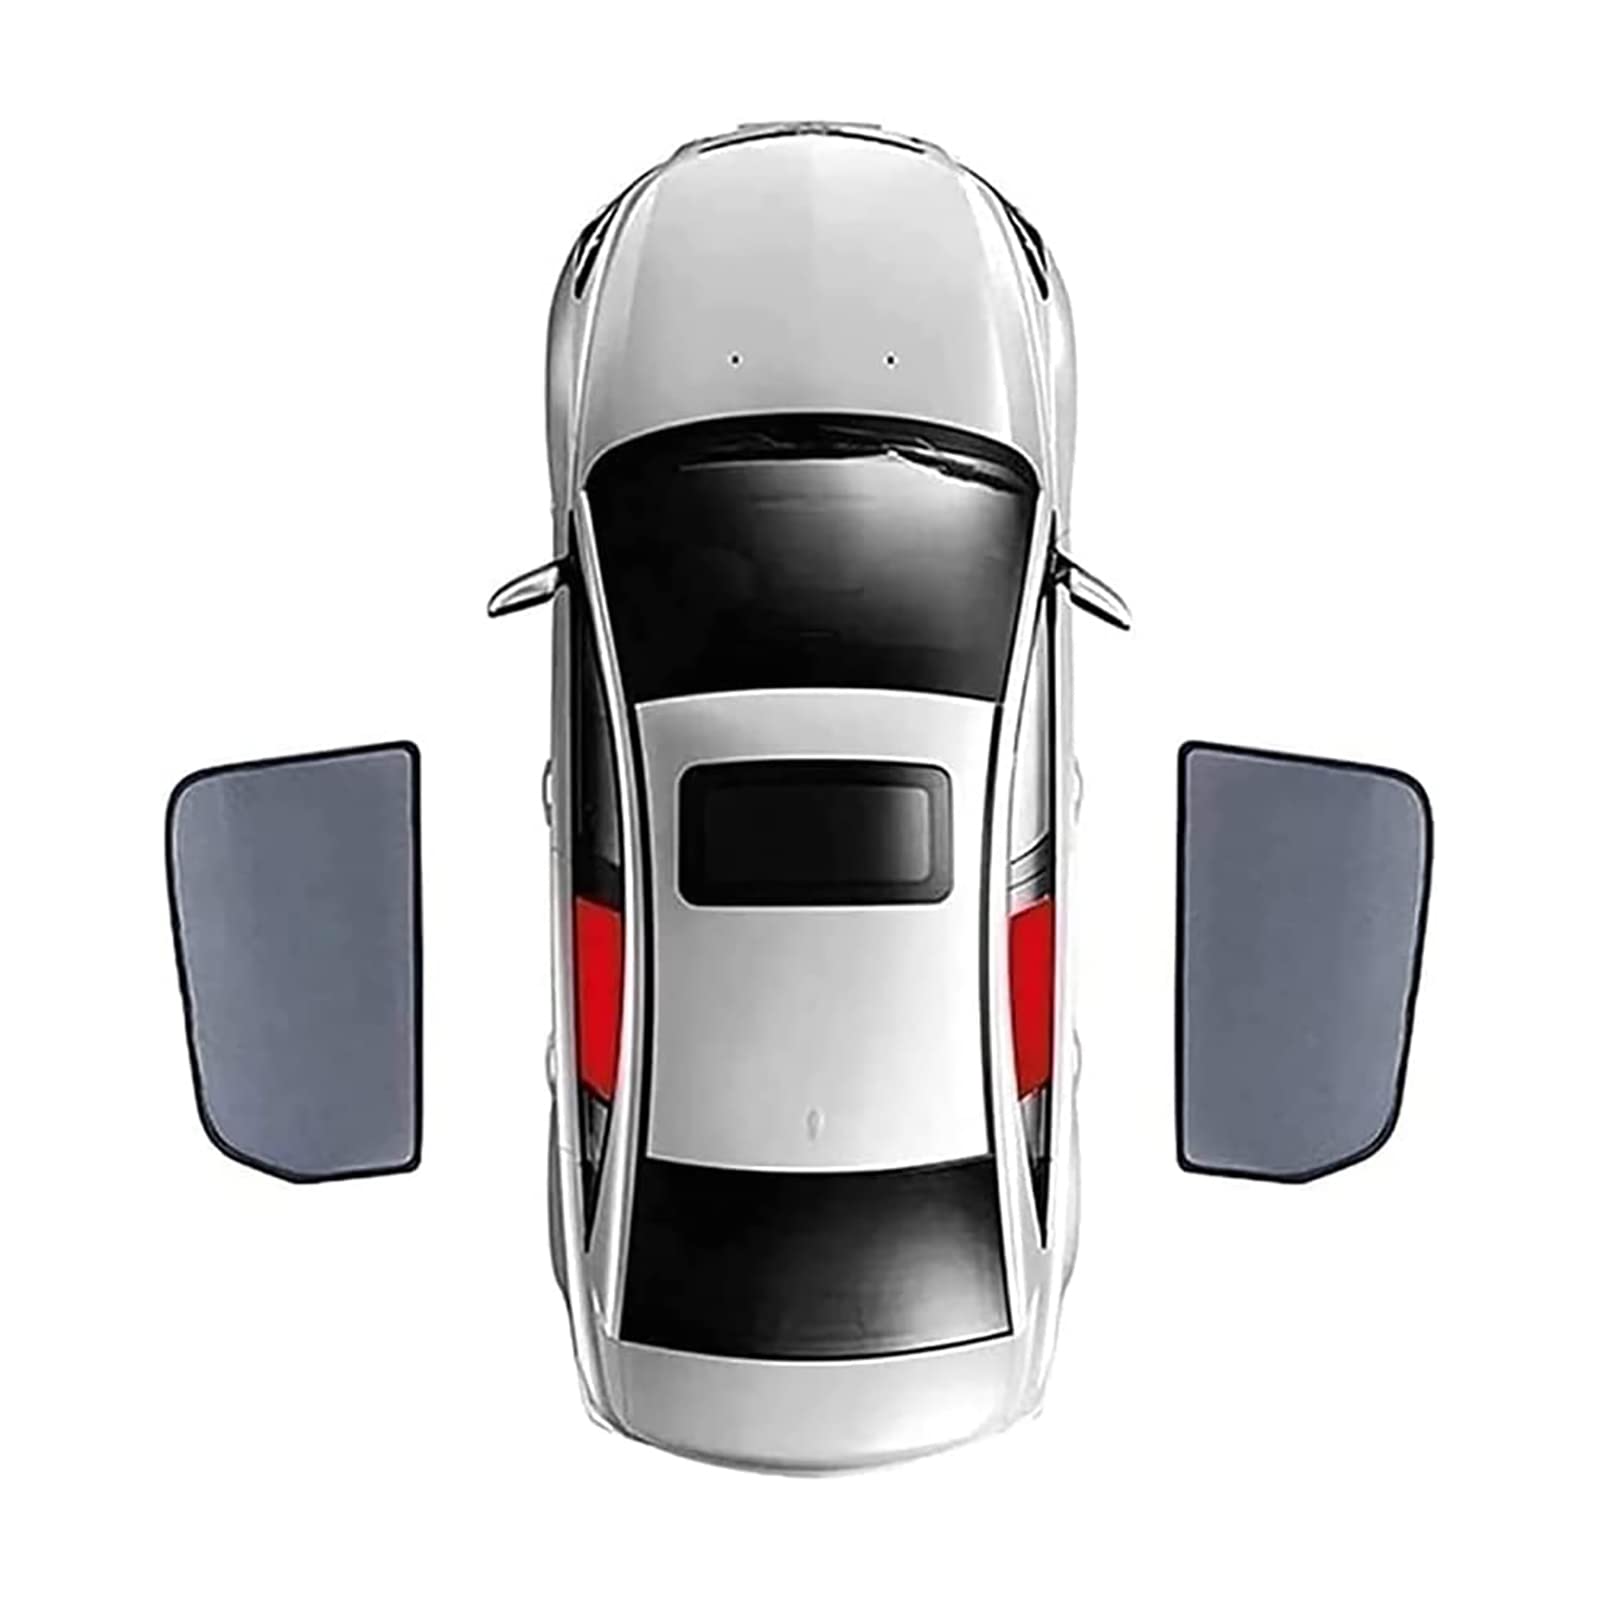 Auto Seitenfenster Sonnenschutz für Hyundai Sonata Fifth Generation 2002-2007, Vordere und Hintere Seitenfenster Atmungsaktives UV Schutz Privacy Protection Sonnenschutz Accessories von MSTMAZZ